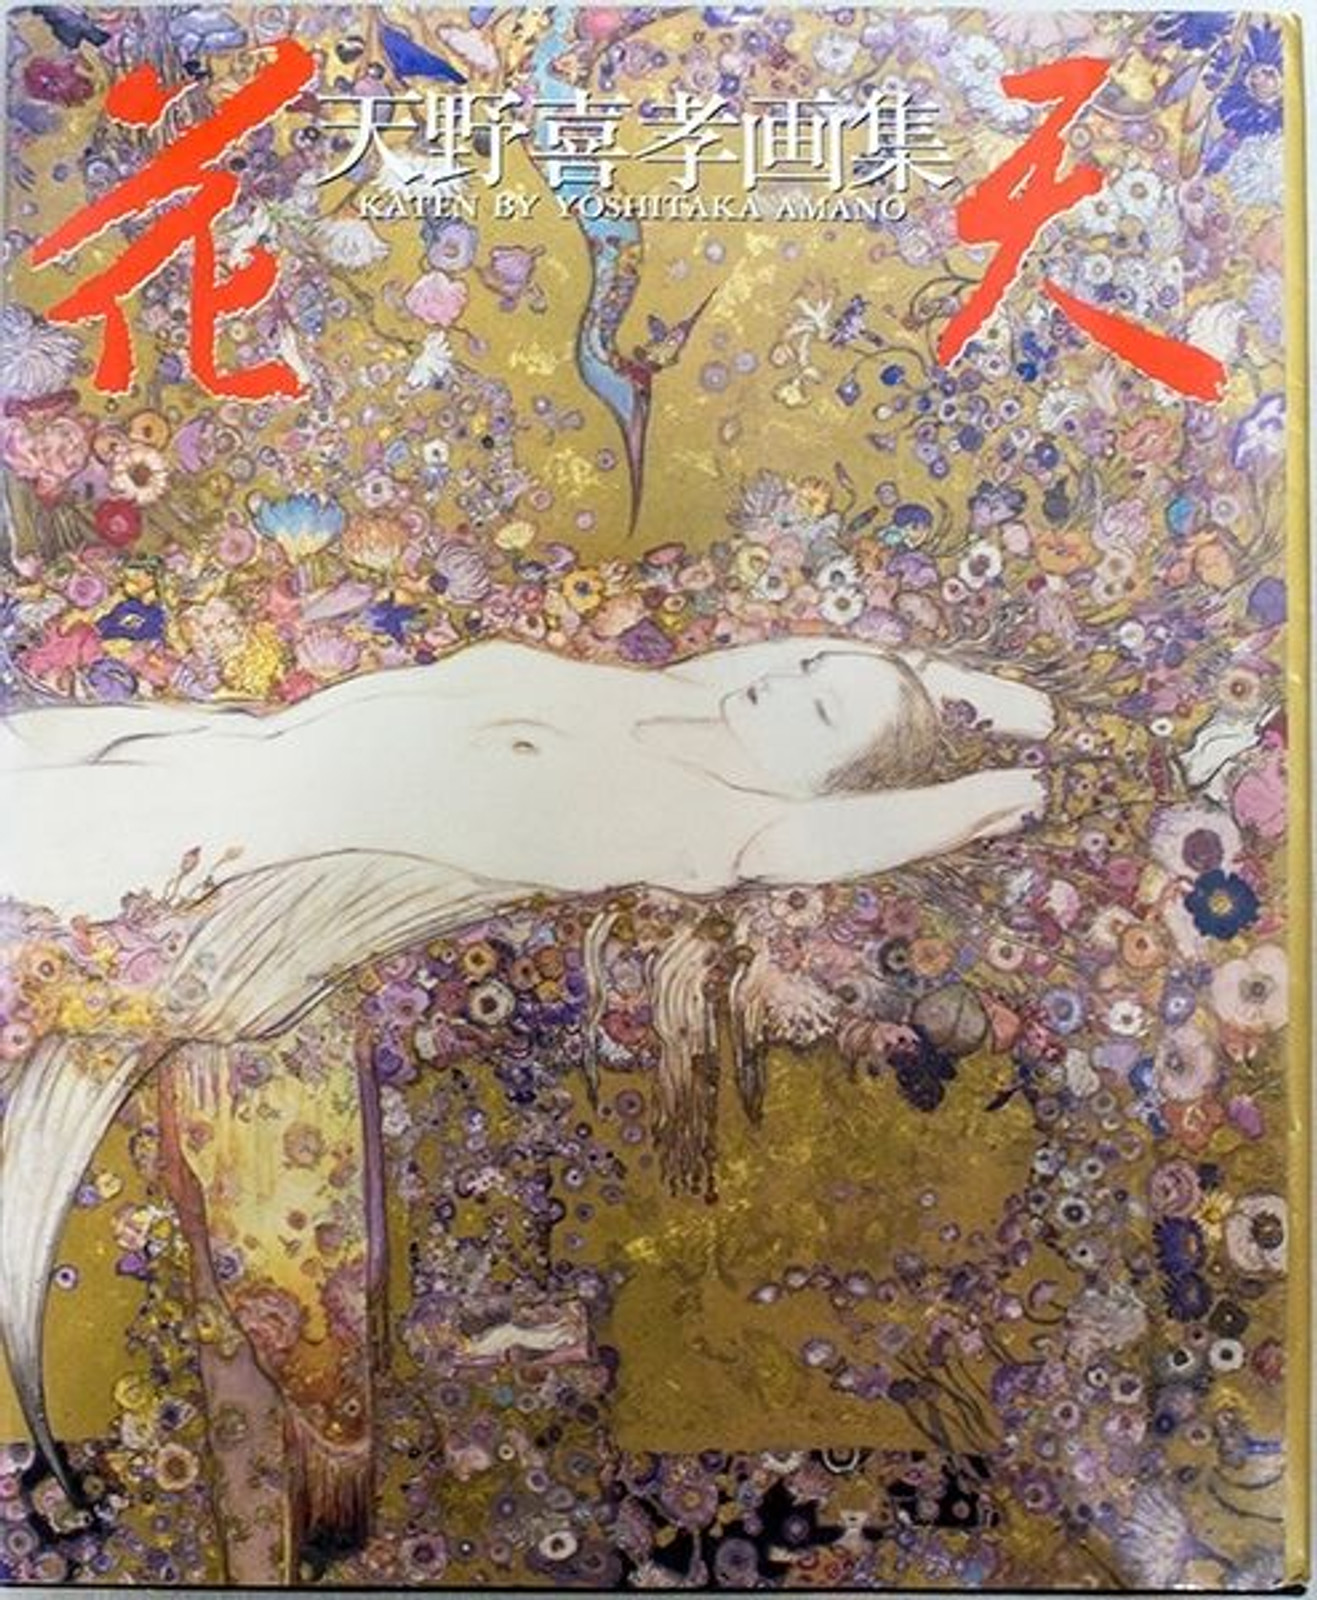 KATEN Yoshitaka Amano Illustration Art Book JAPAN FINAL FANTASY GAME ANIME